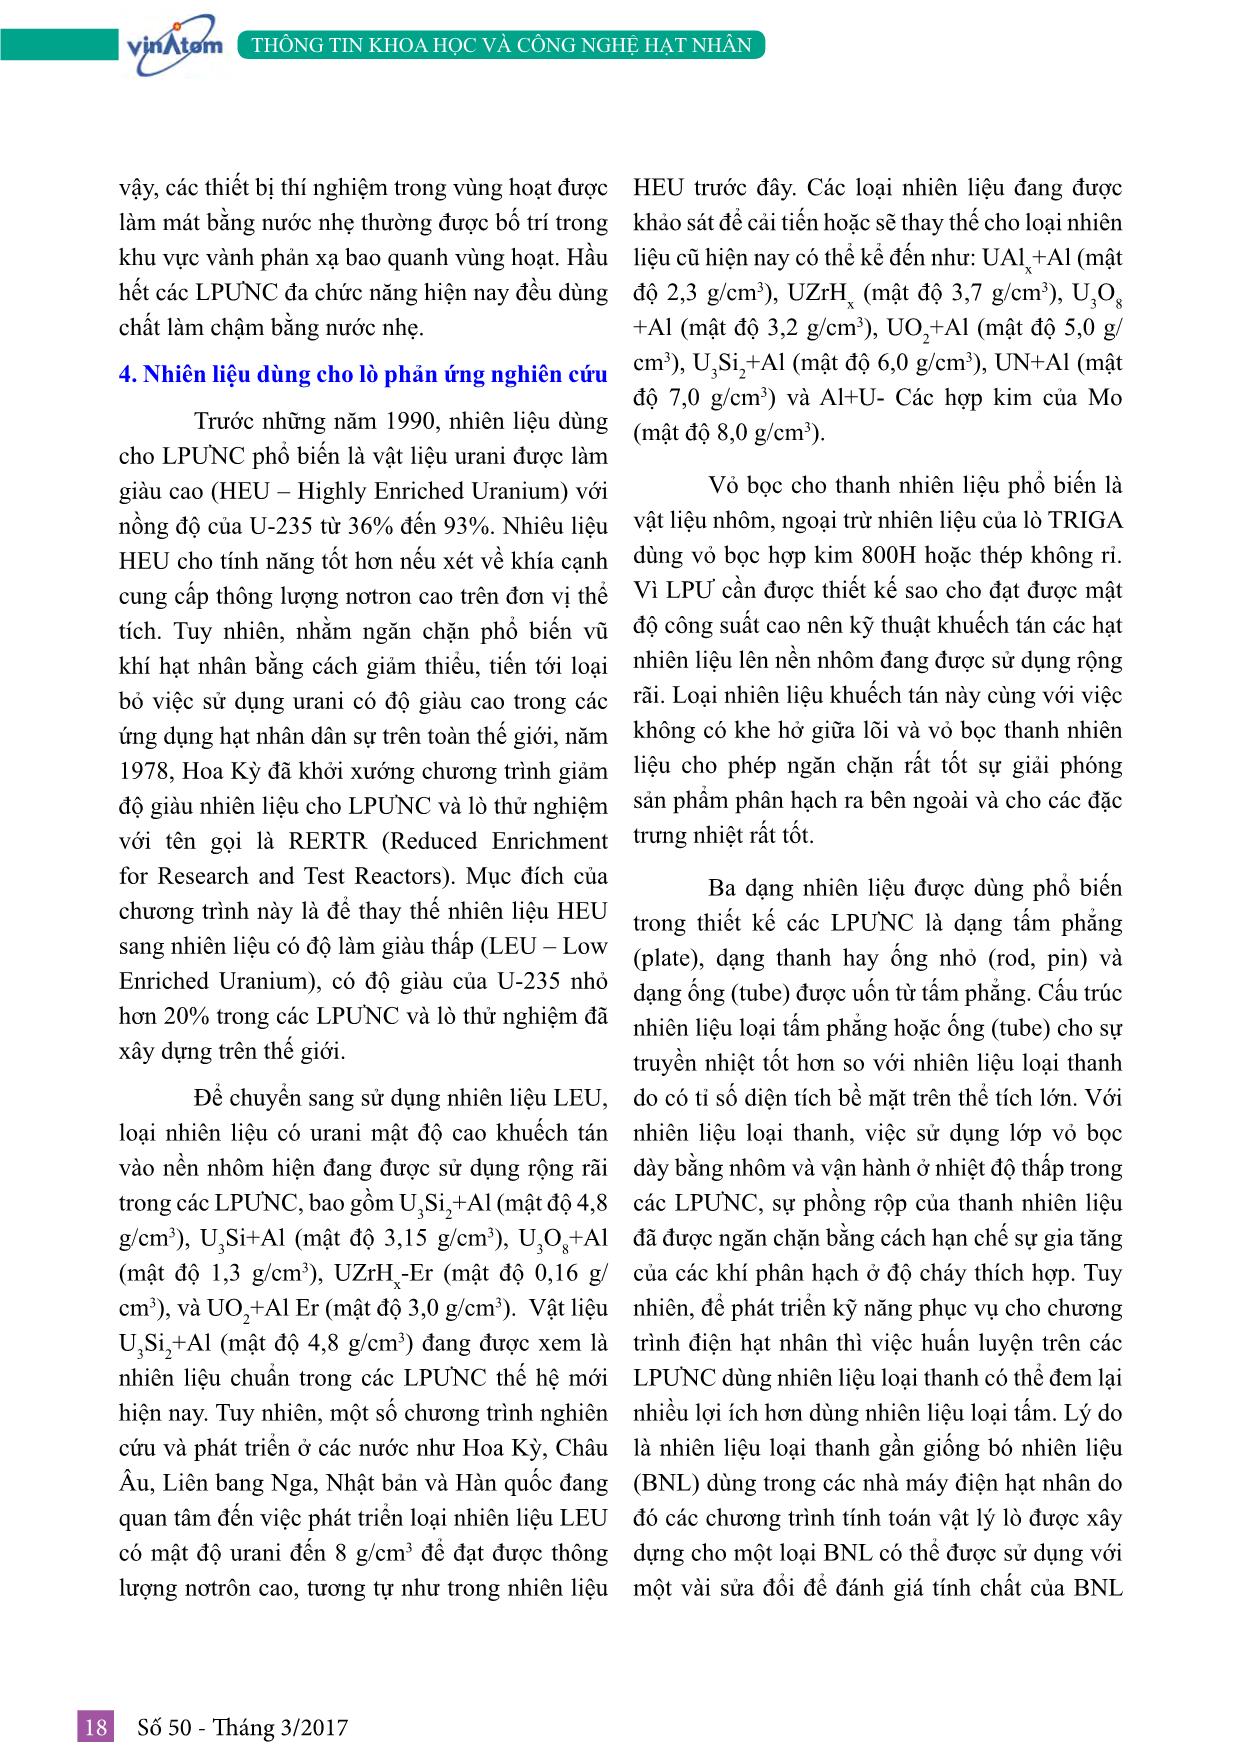 Tìm hiểu về công nghệ lò phản ứng nghiên cứu (Phần 1: Các thông tin chung) trang 8